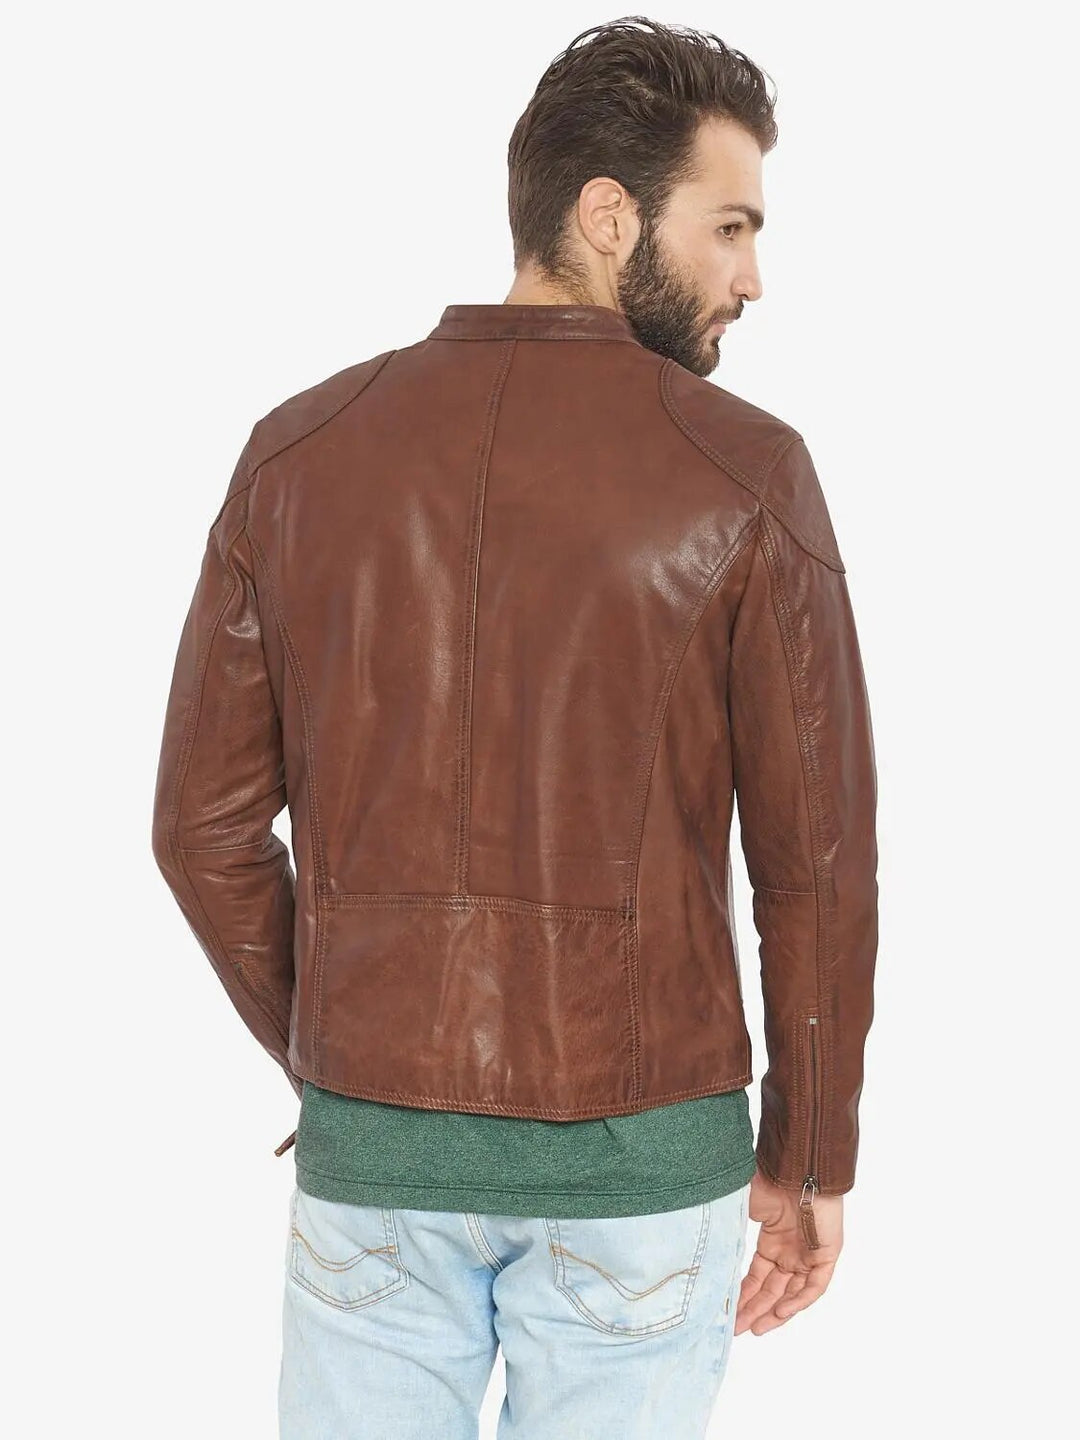 Suede Cow Leather Men's Biker Jacket